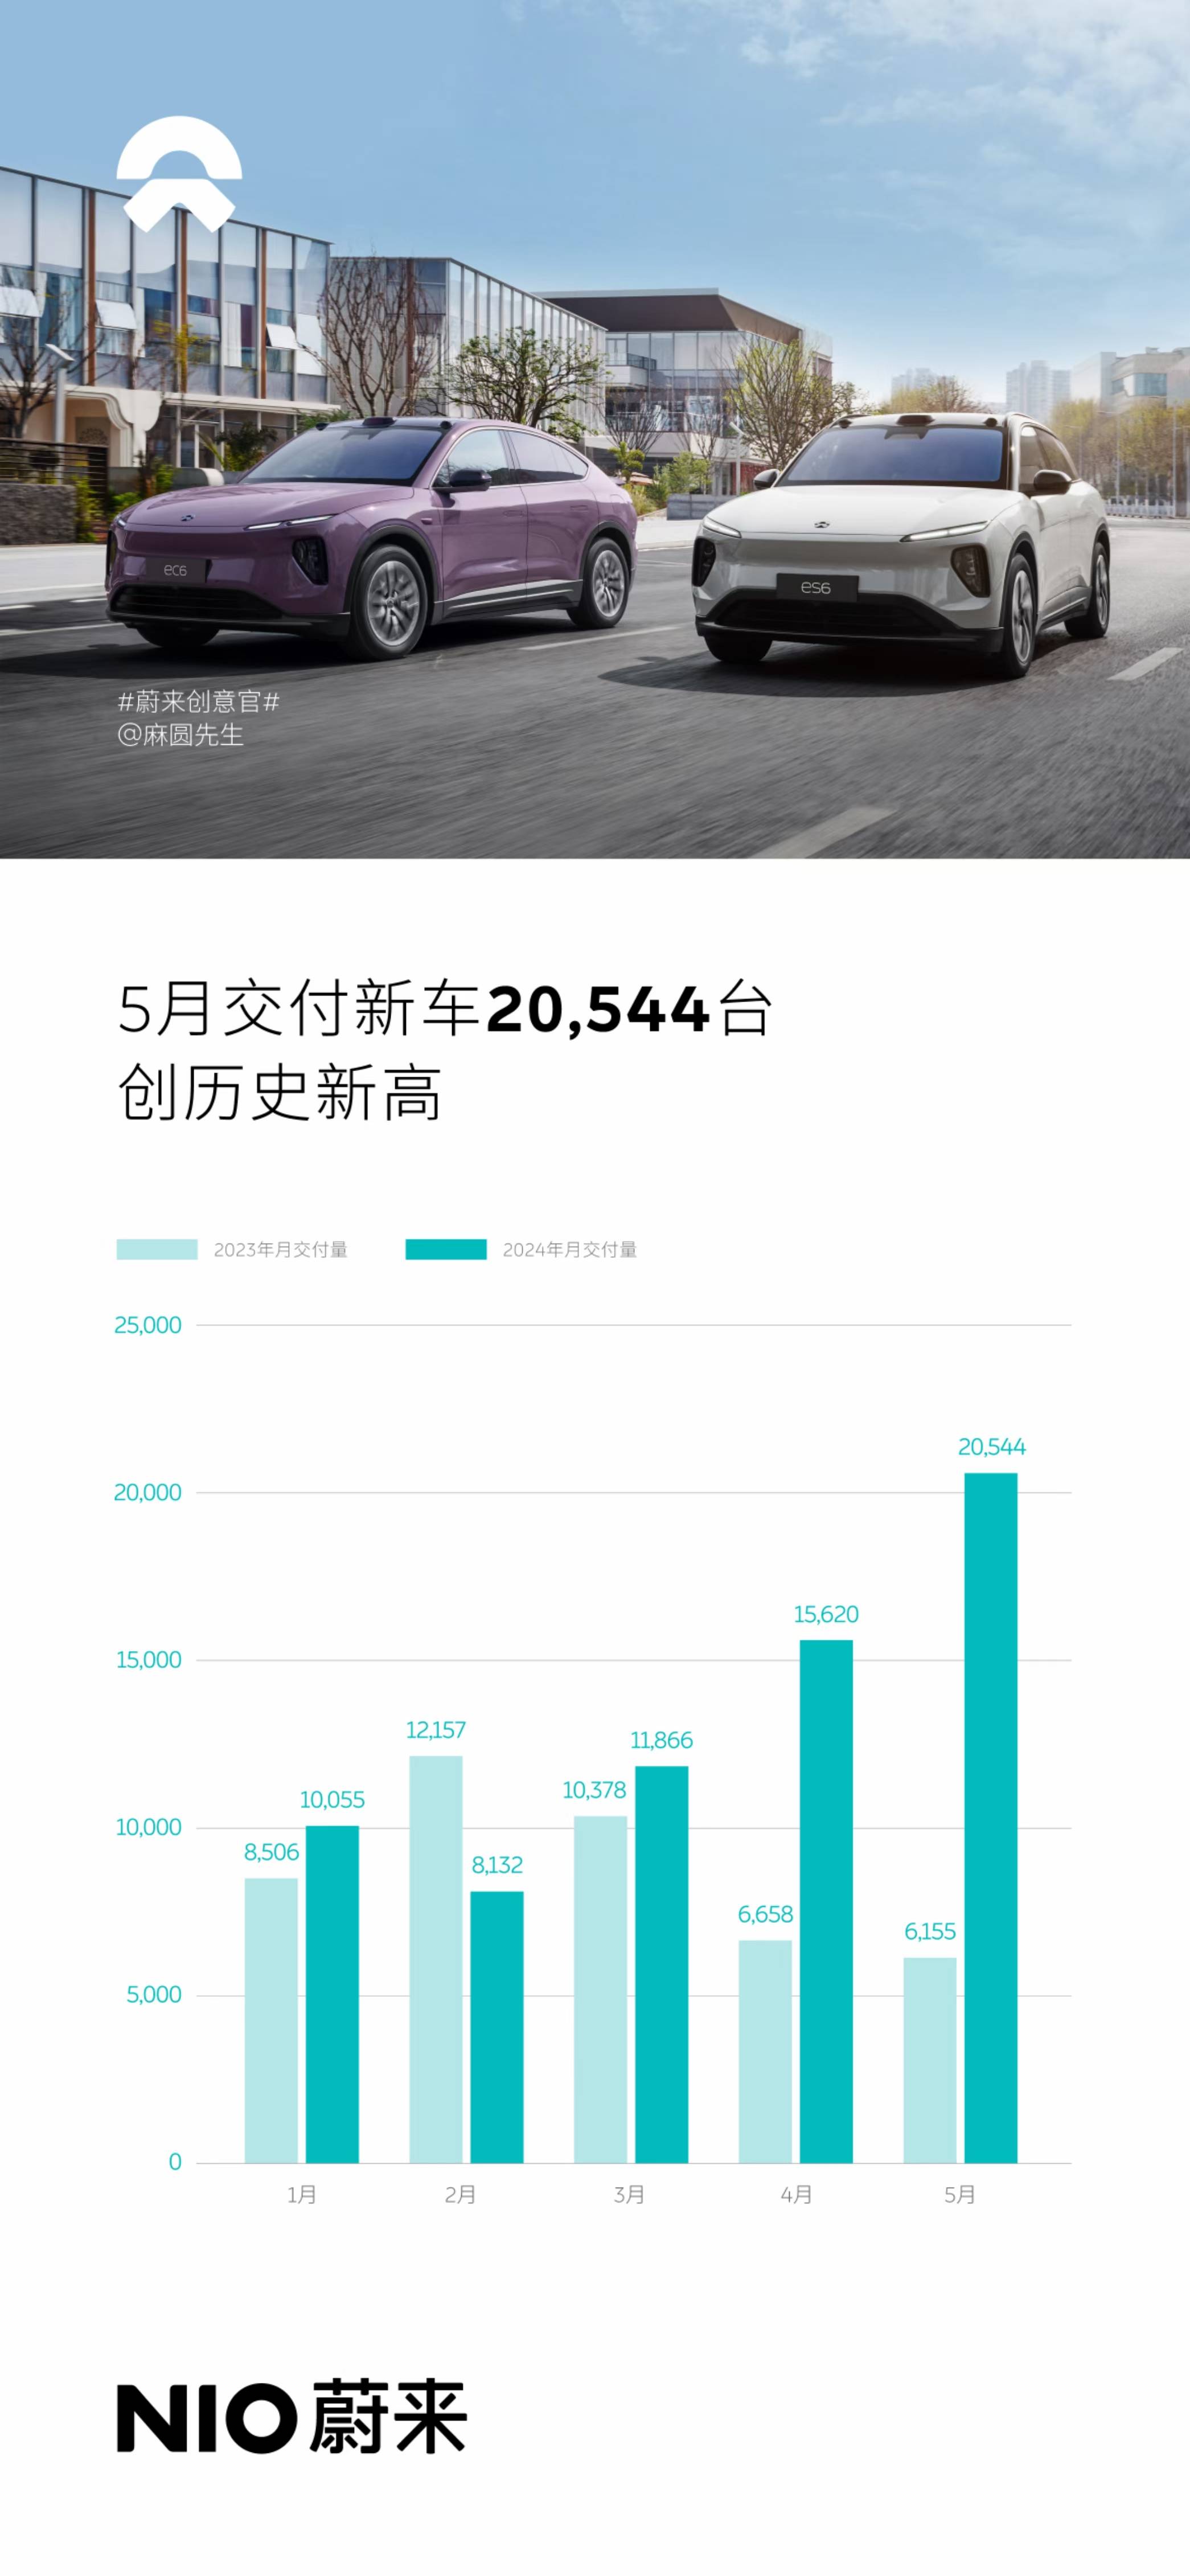 搜狐汽车全球快讯 蔚来5月交付新车20544辆 同比增长233.8%